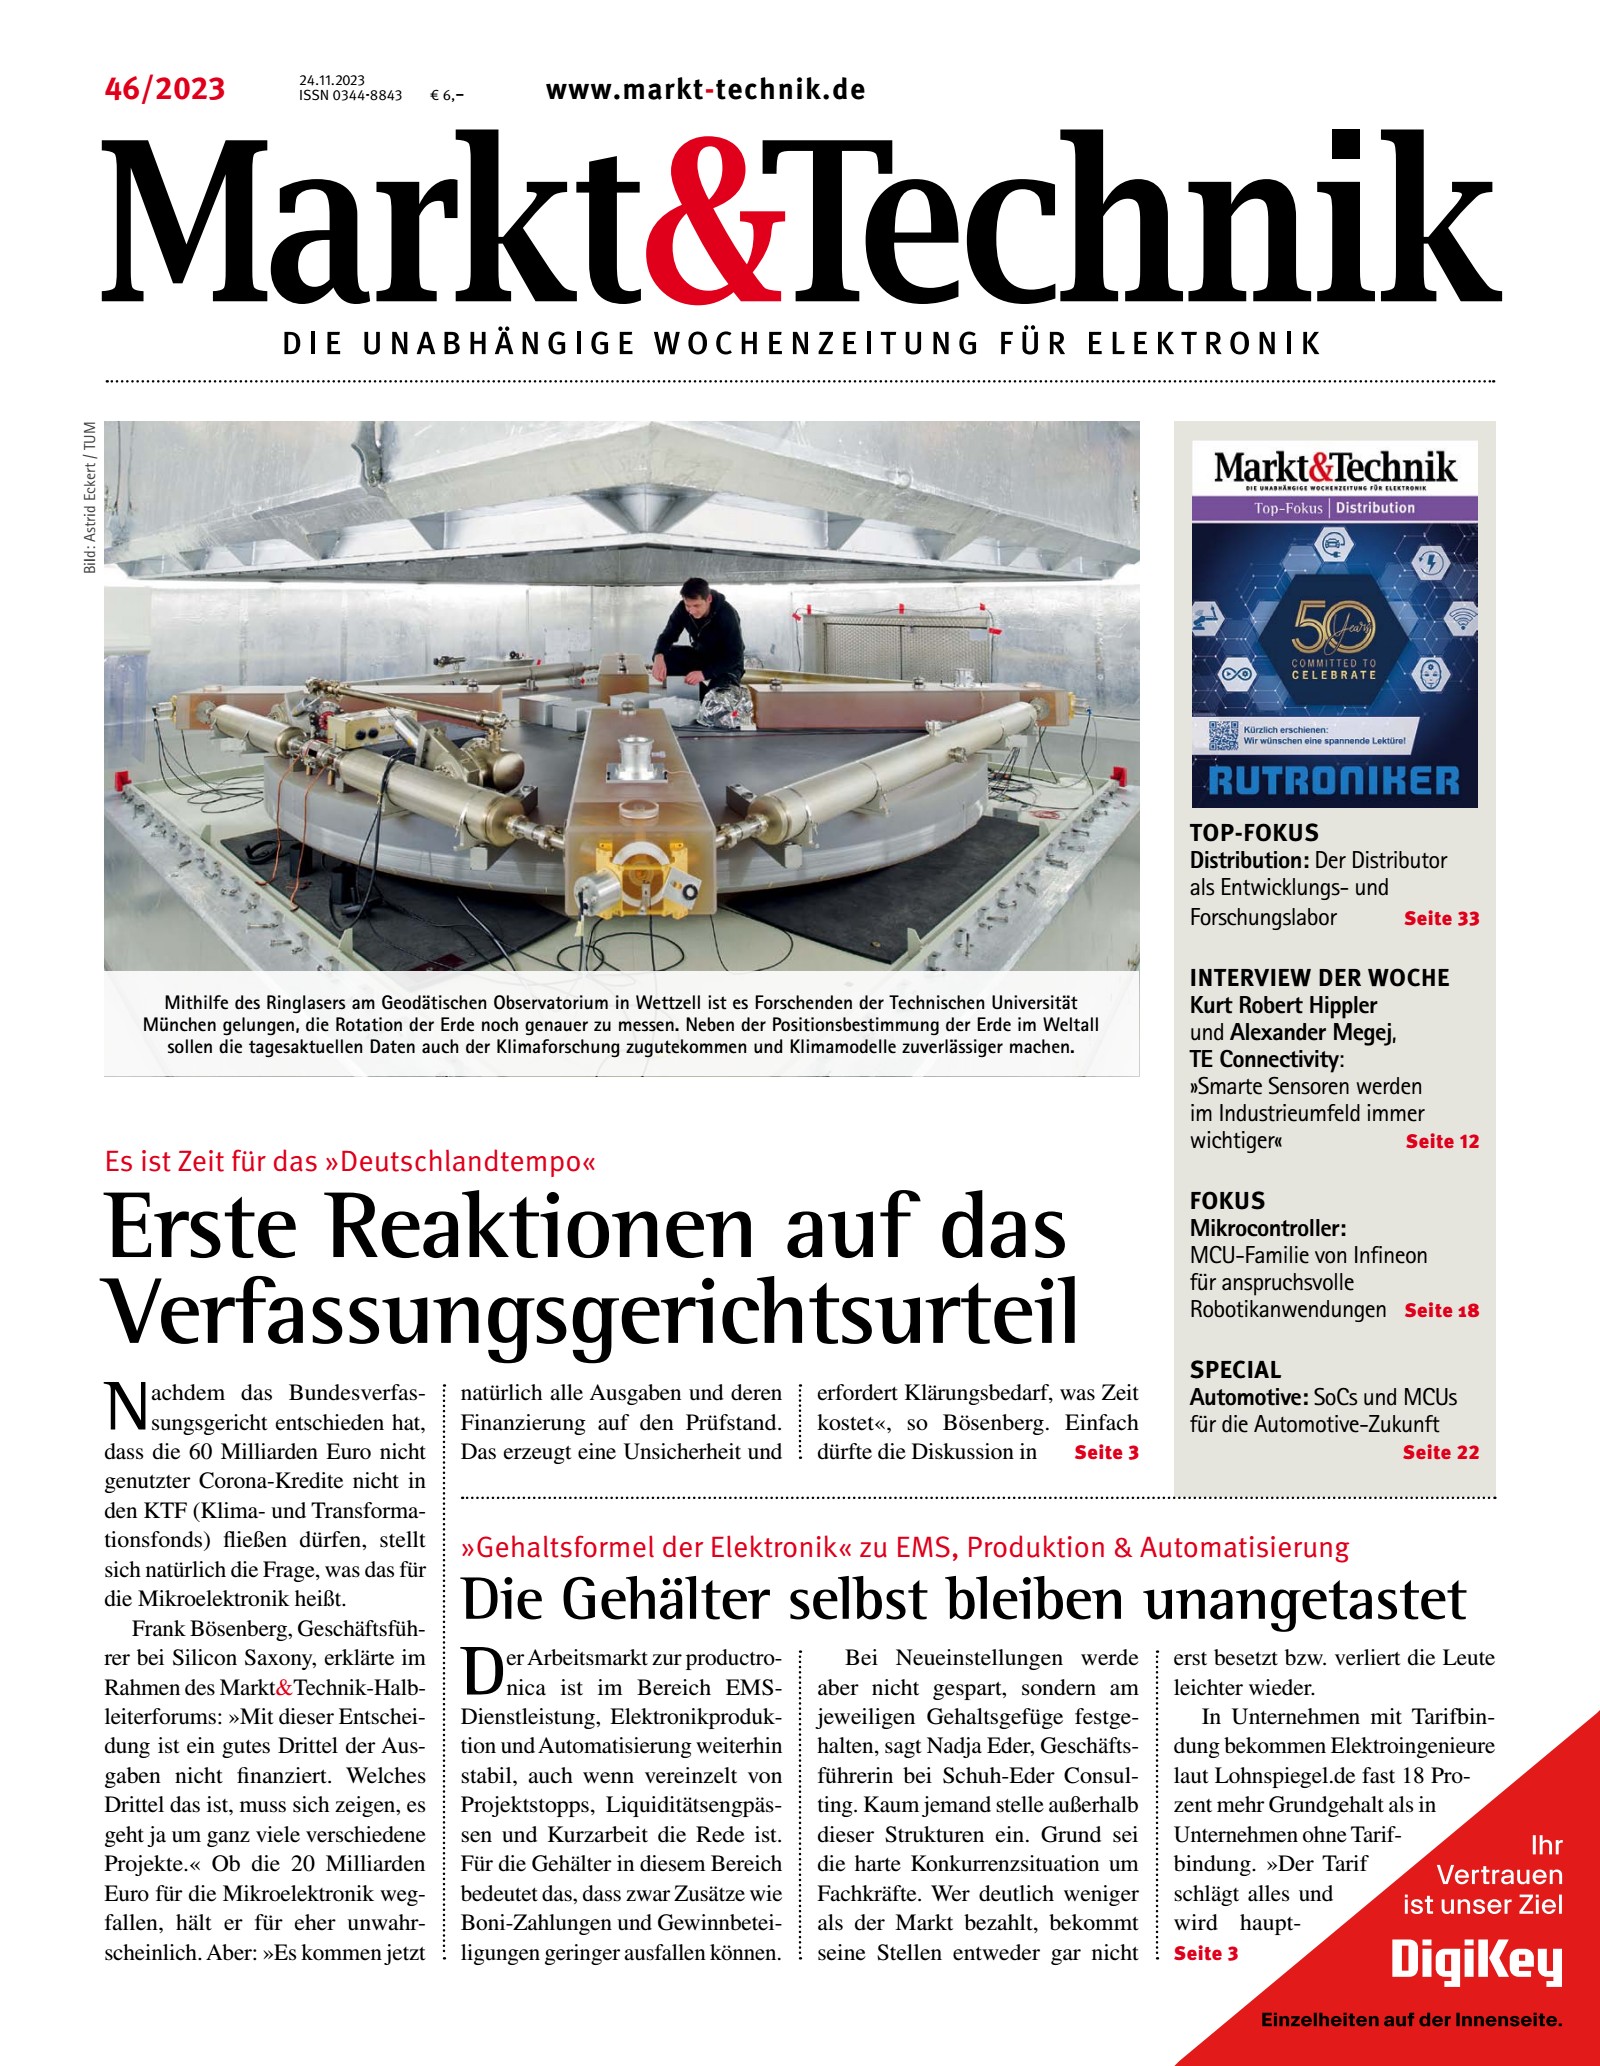 Markt&Technik 0046/2023 Digital